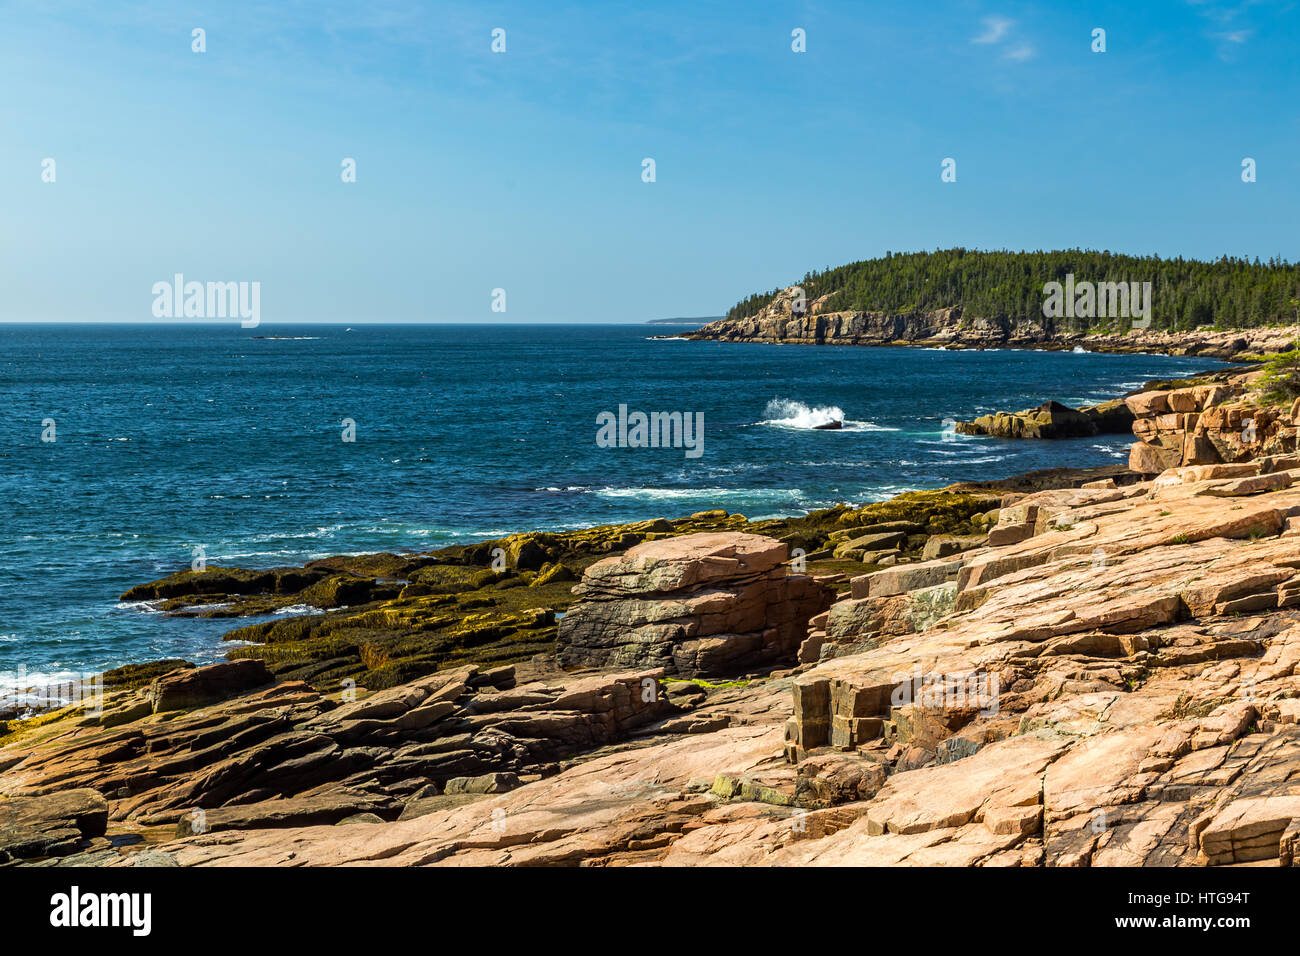 Maine il rocky, foresta-costa alberata ha più litorale di California, con insenature, calette e baie lambite dal frigida acque dell'Oceano Atlantico, anche in warmes Foto Stock